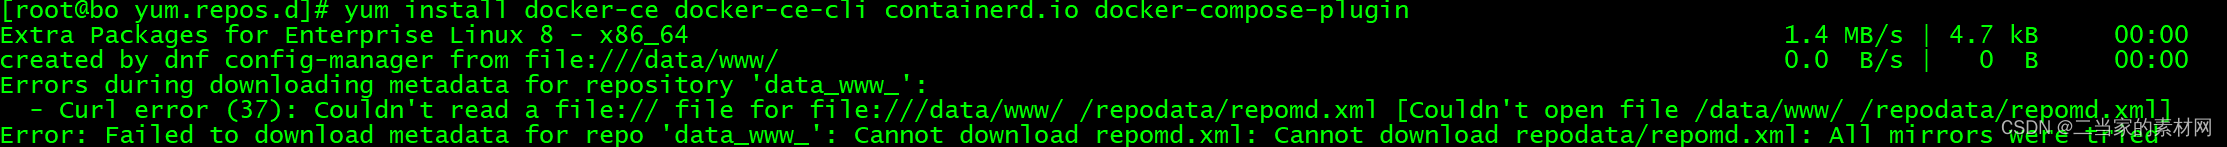 阿里云Centos8安装Dockers详细过程